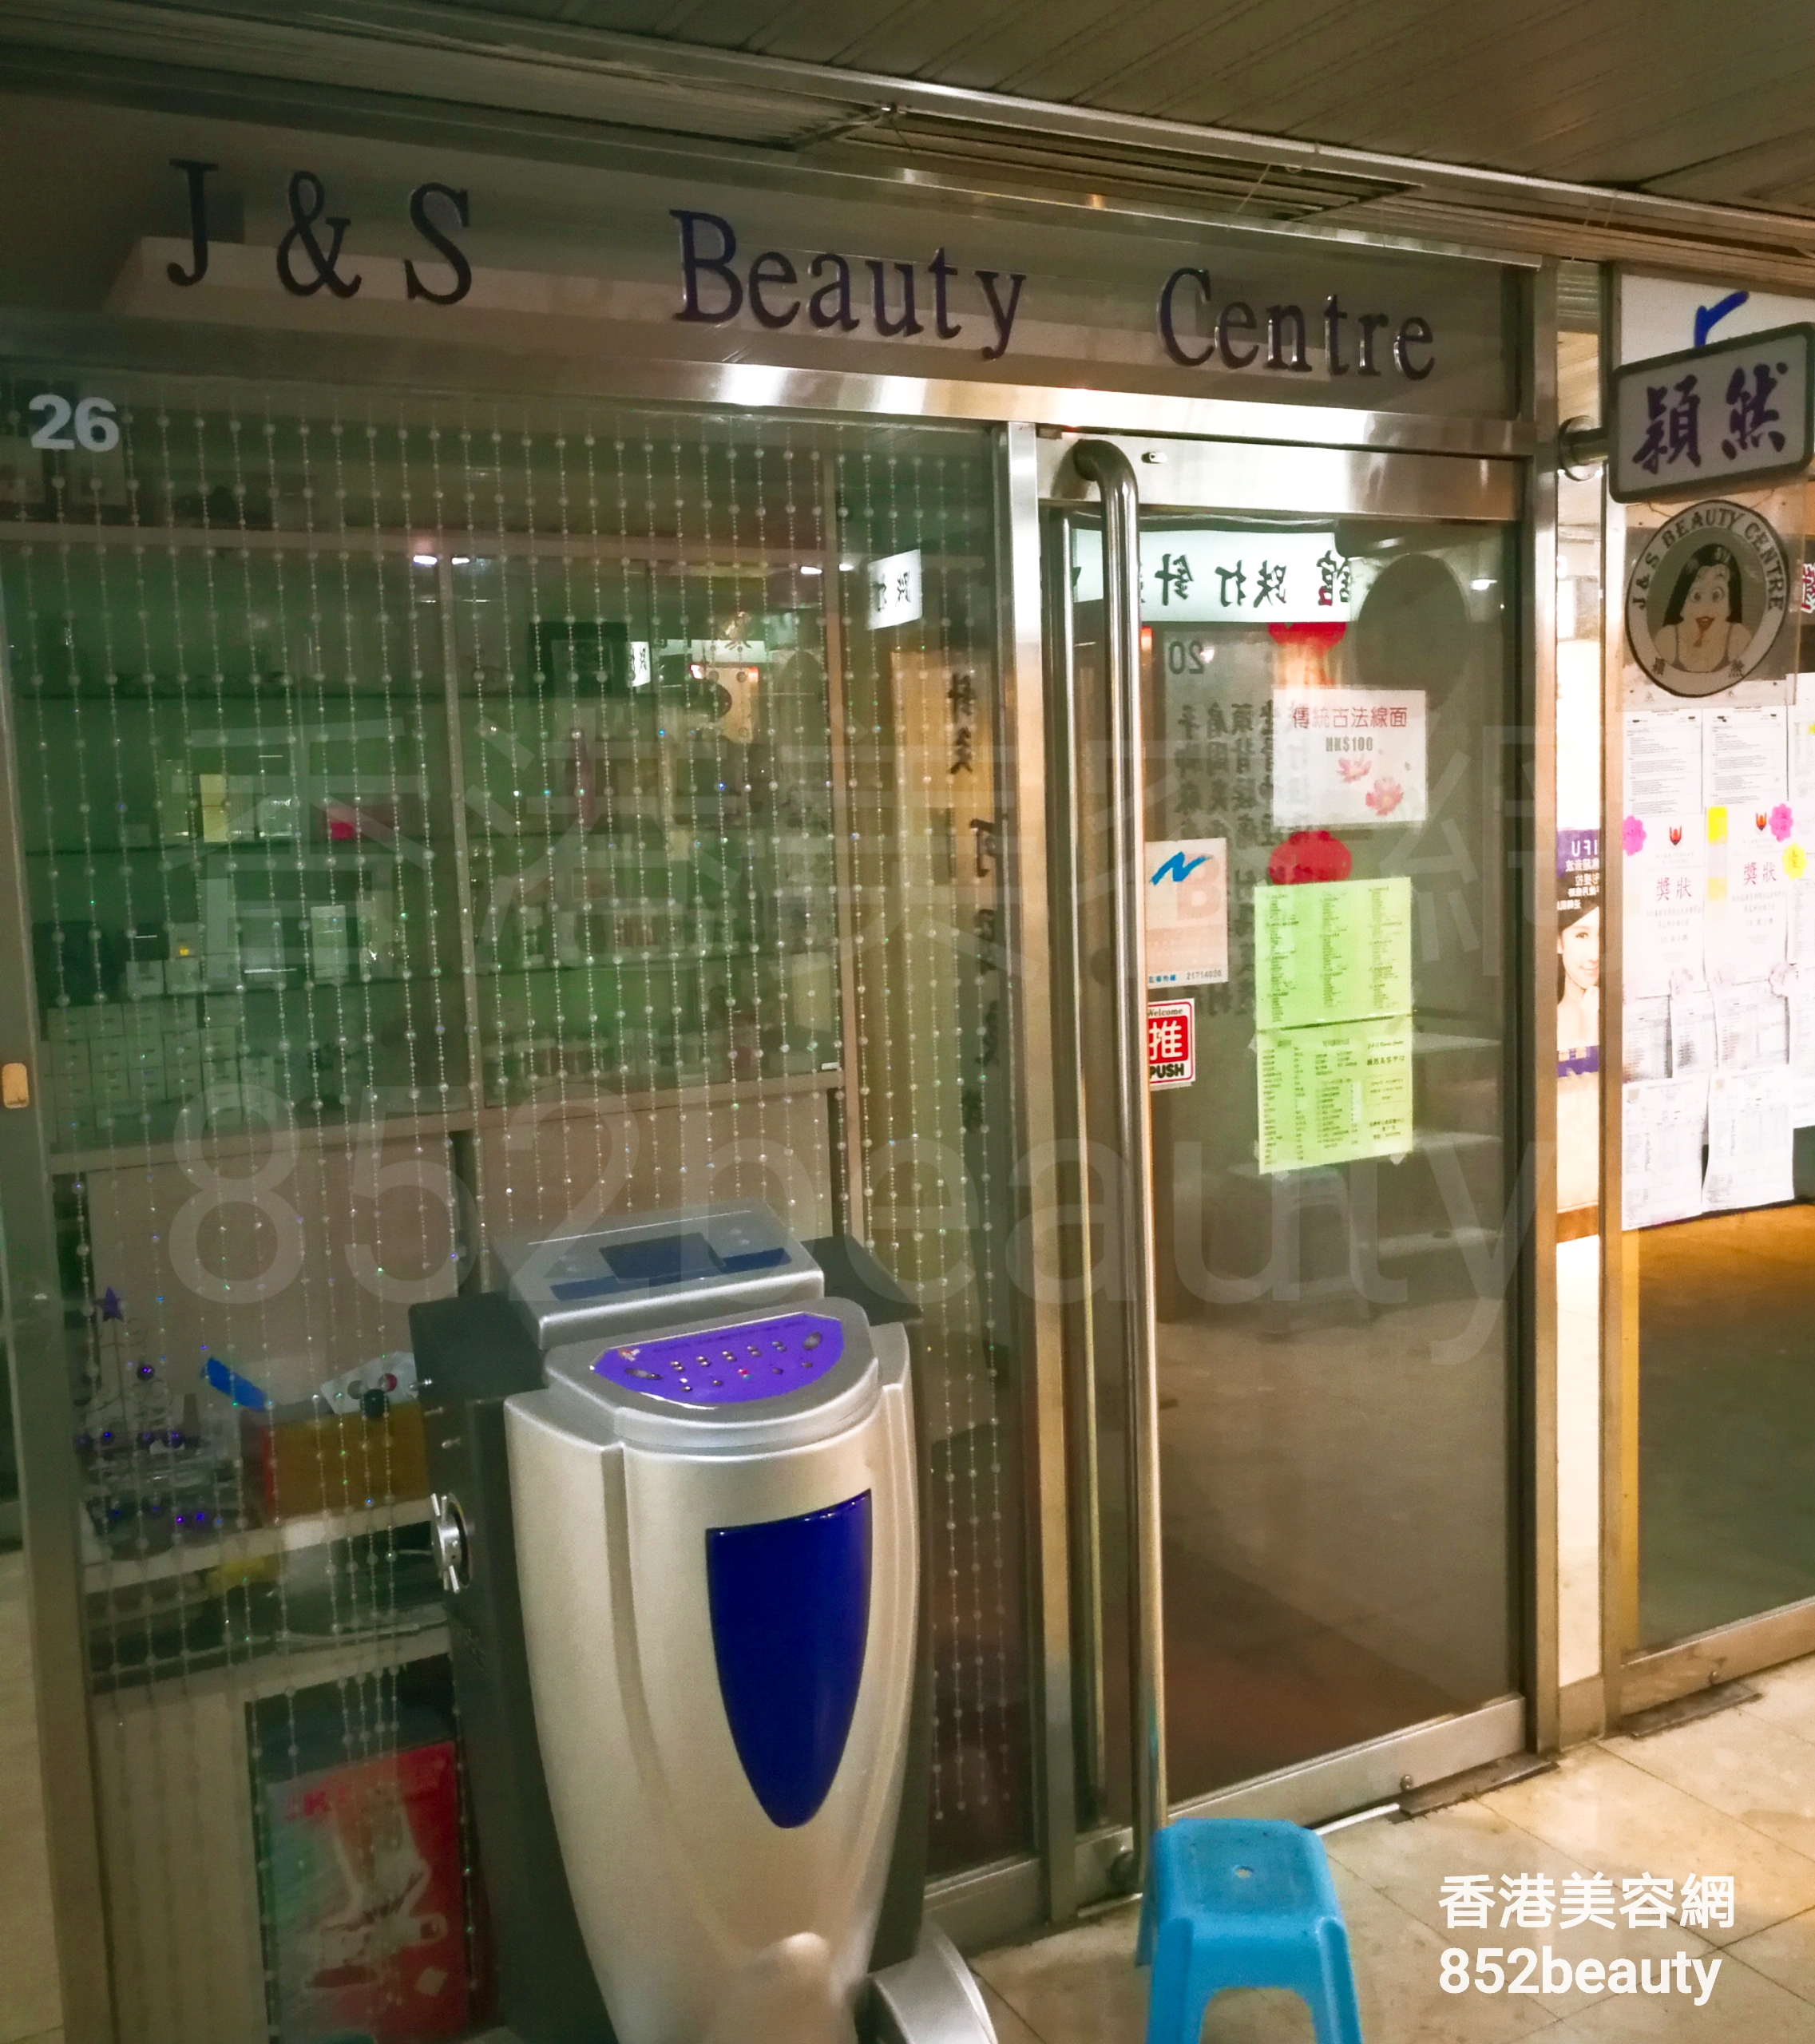 美甲: J&S Beauty Centre 穎然美容中心